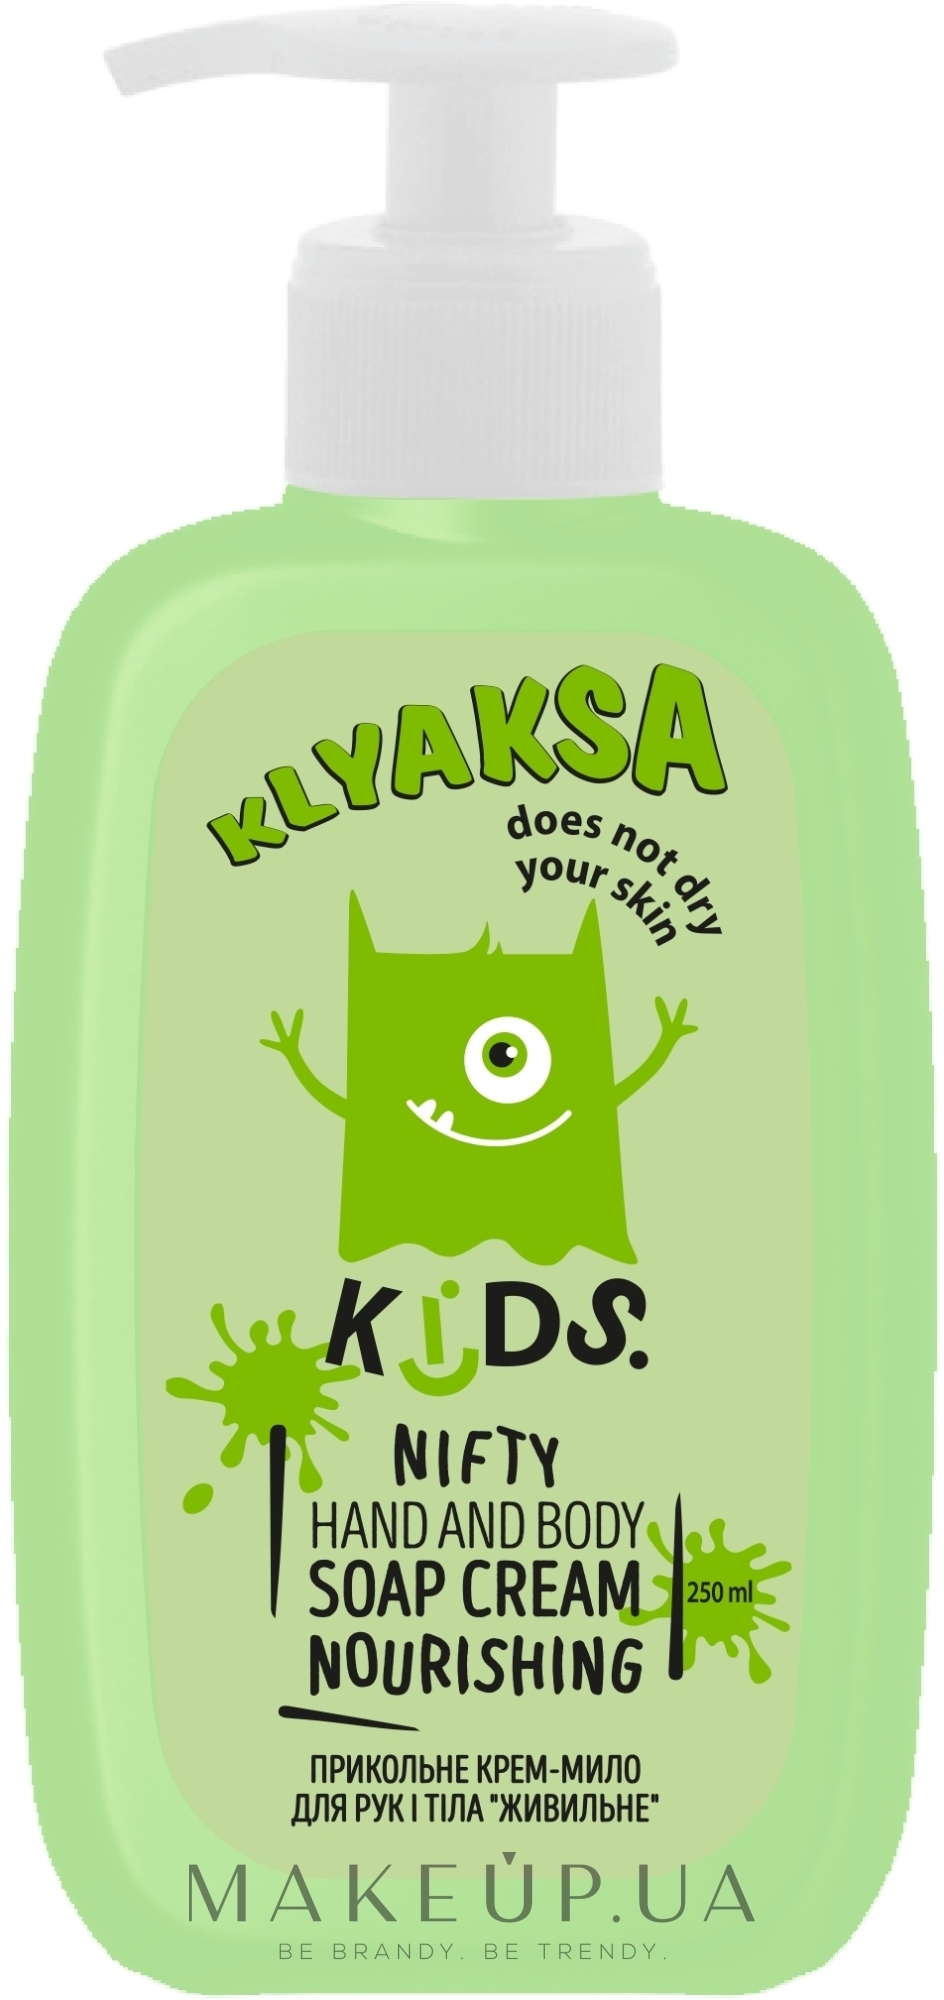 Прикольное крем-мыло для рук и тела "Питательное" - Klyaksa — фото 250ml